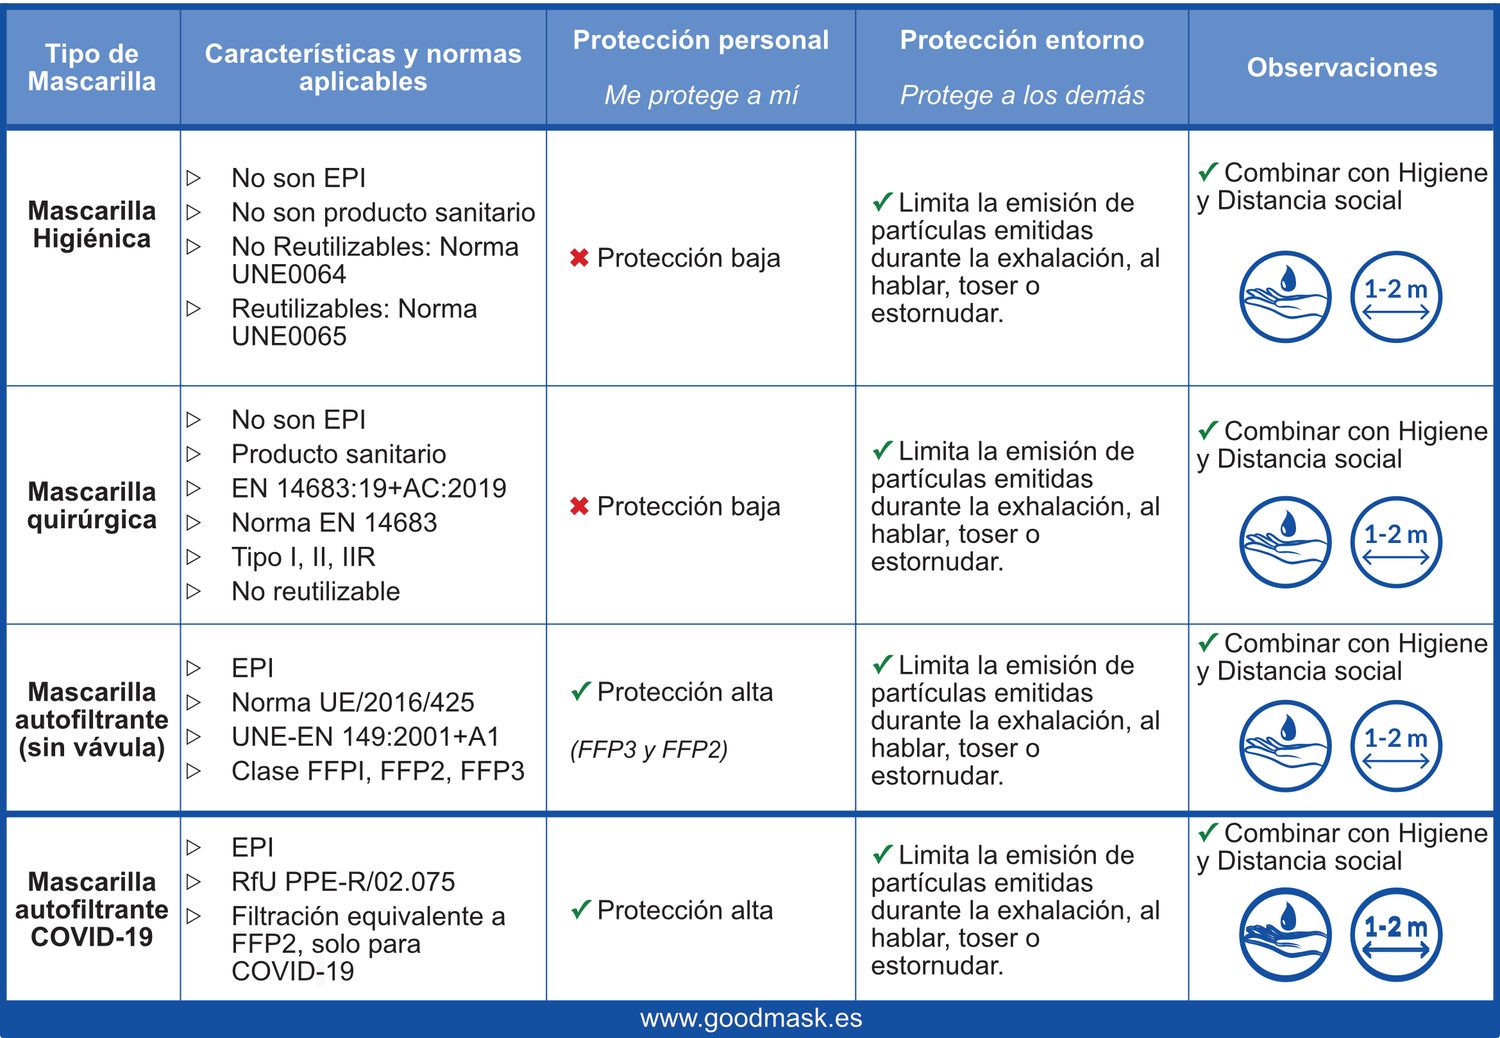 Mascarilla Autofiltrante FFP2 NR RNR, Mascarillas Distinción